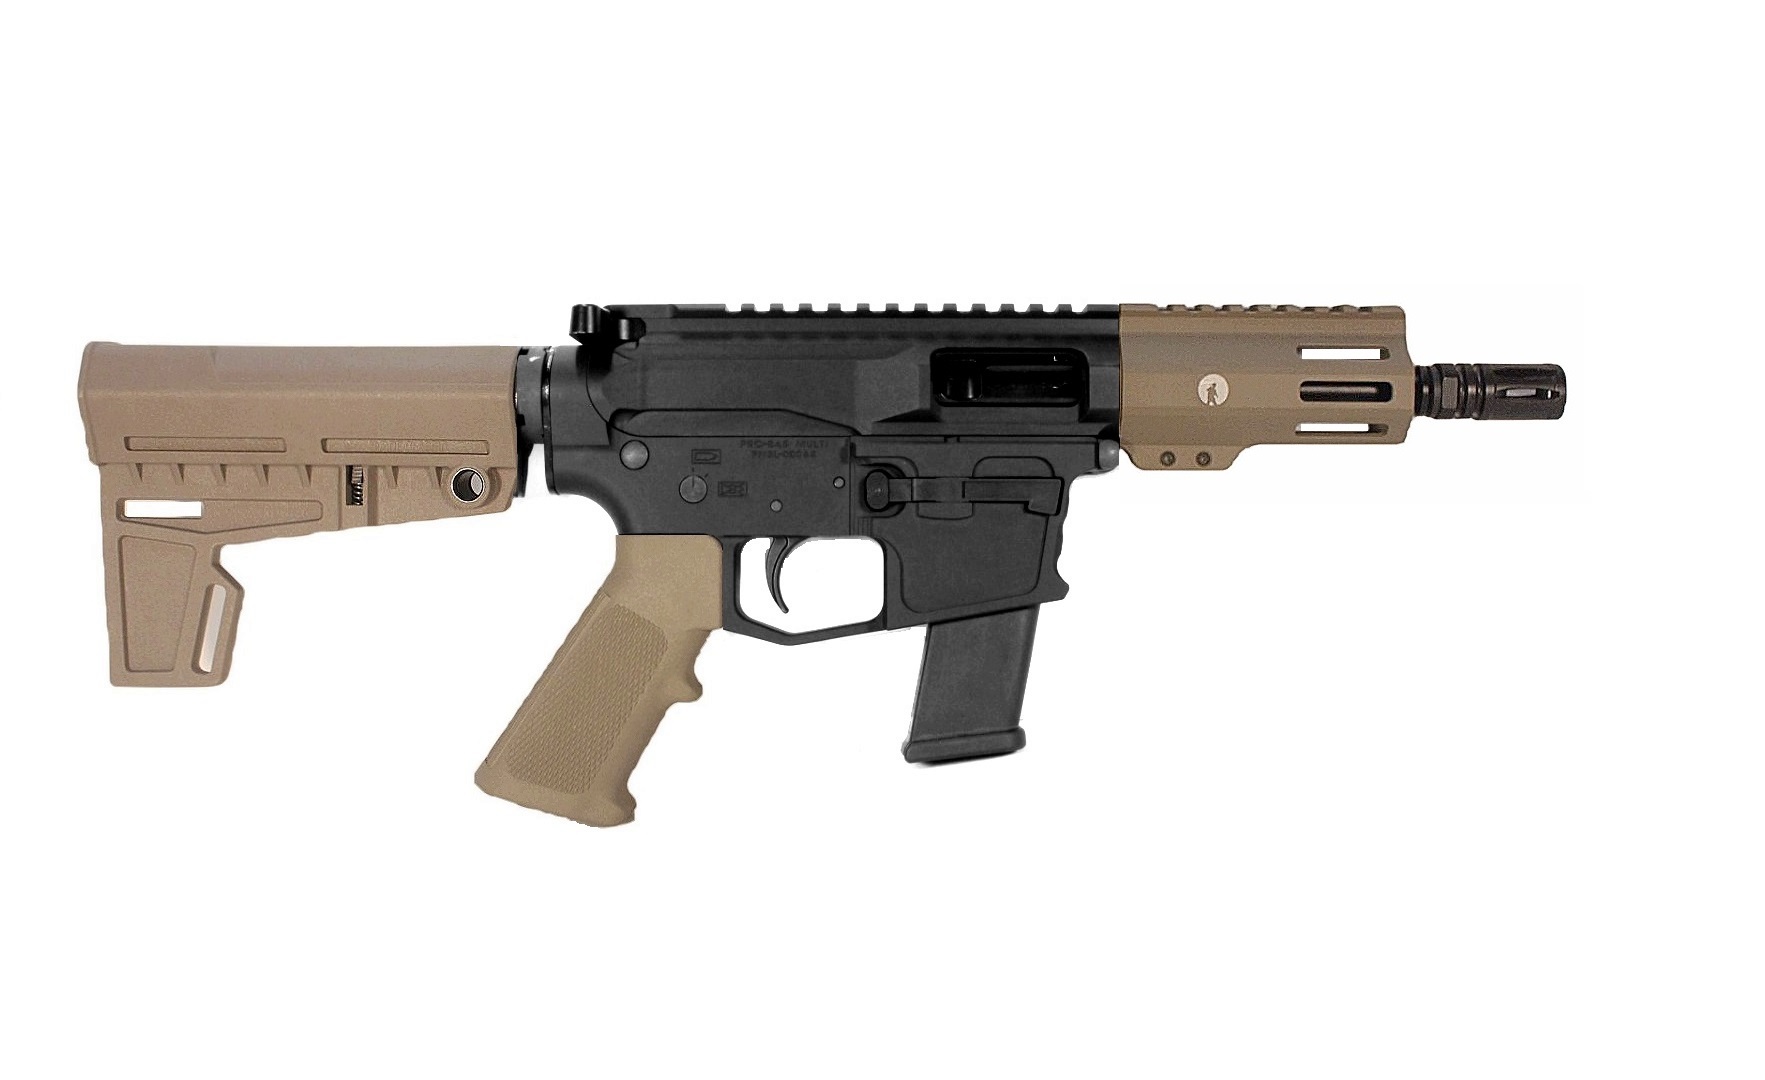 5 inch 40 S&W AR-15 Pistol in BLK/FDE